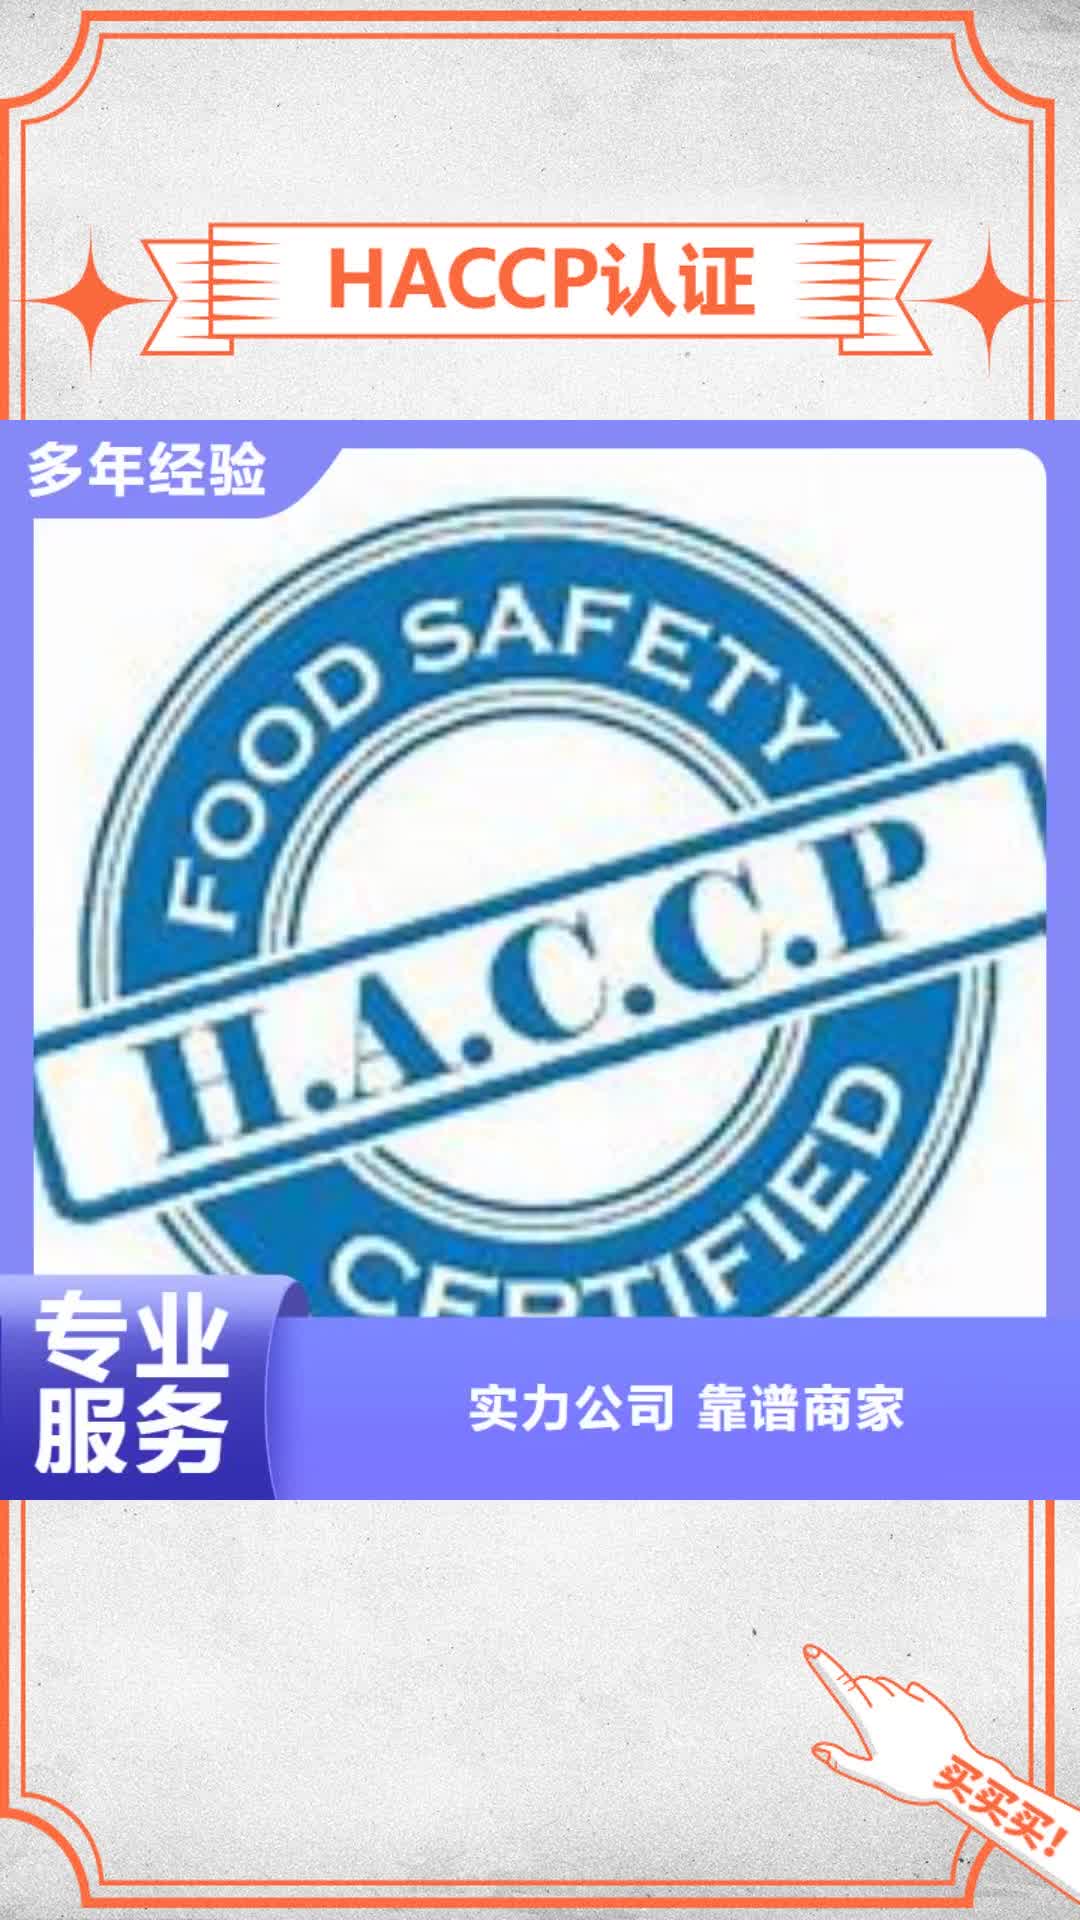 太原 HACCP认证【ISO13485认证】欢迎合作